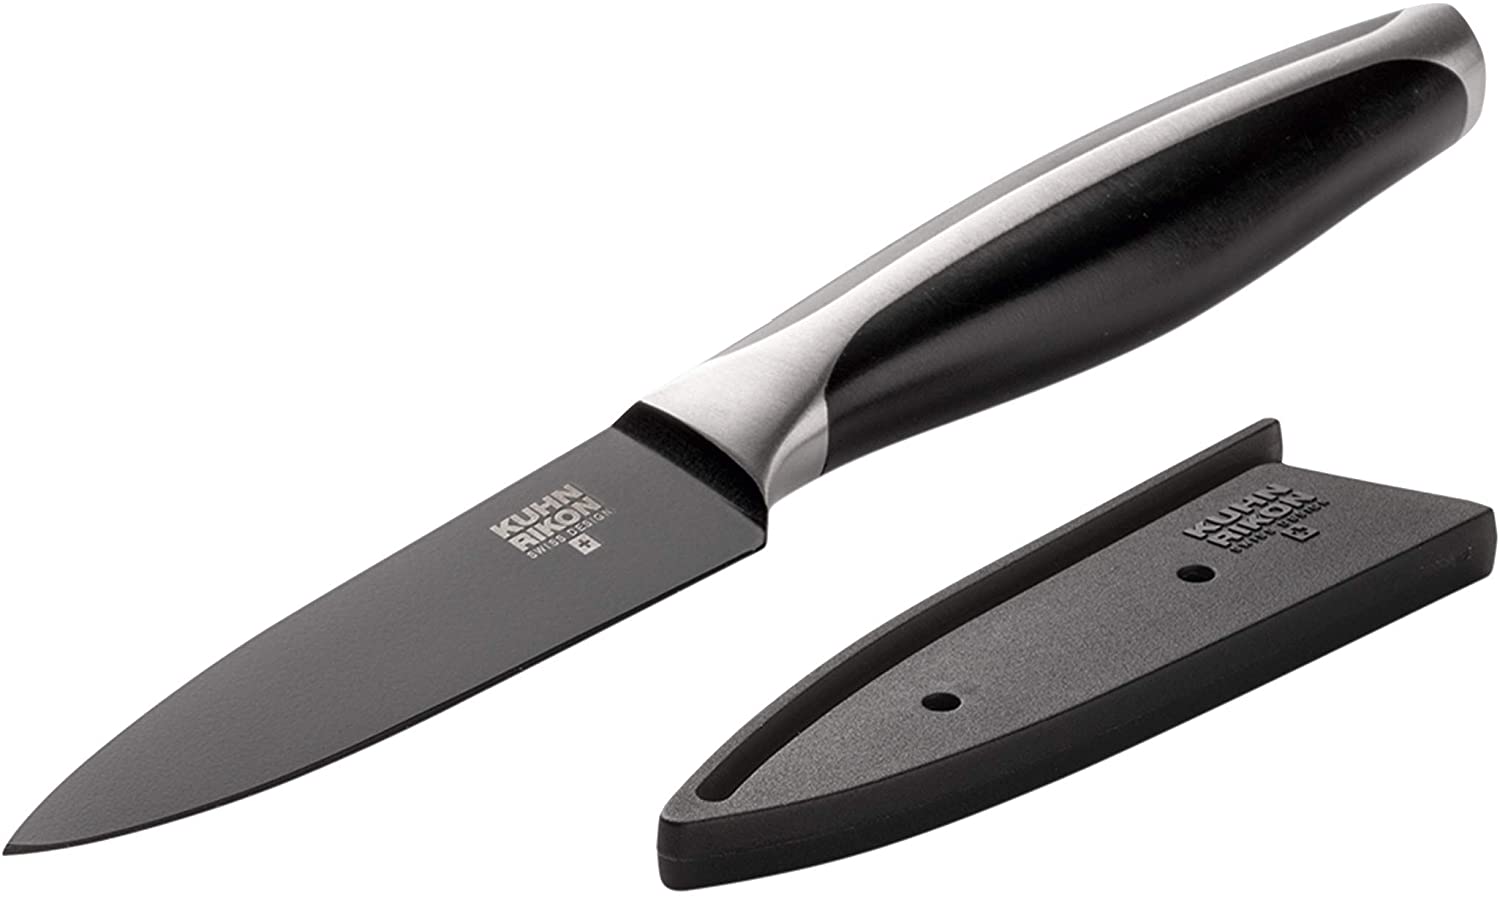 Kuhn Rikon 24012 Black Peak Vegetable Knife, Black